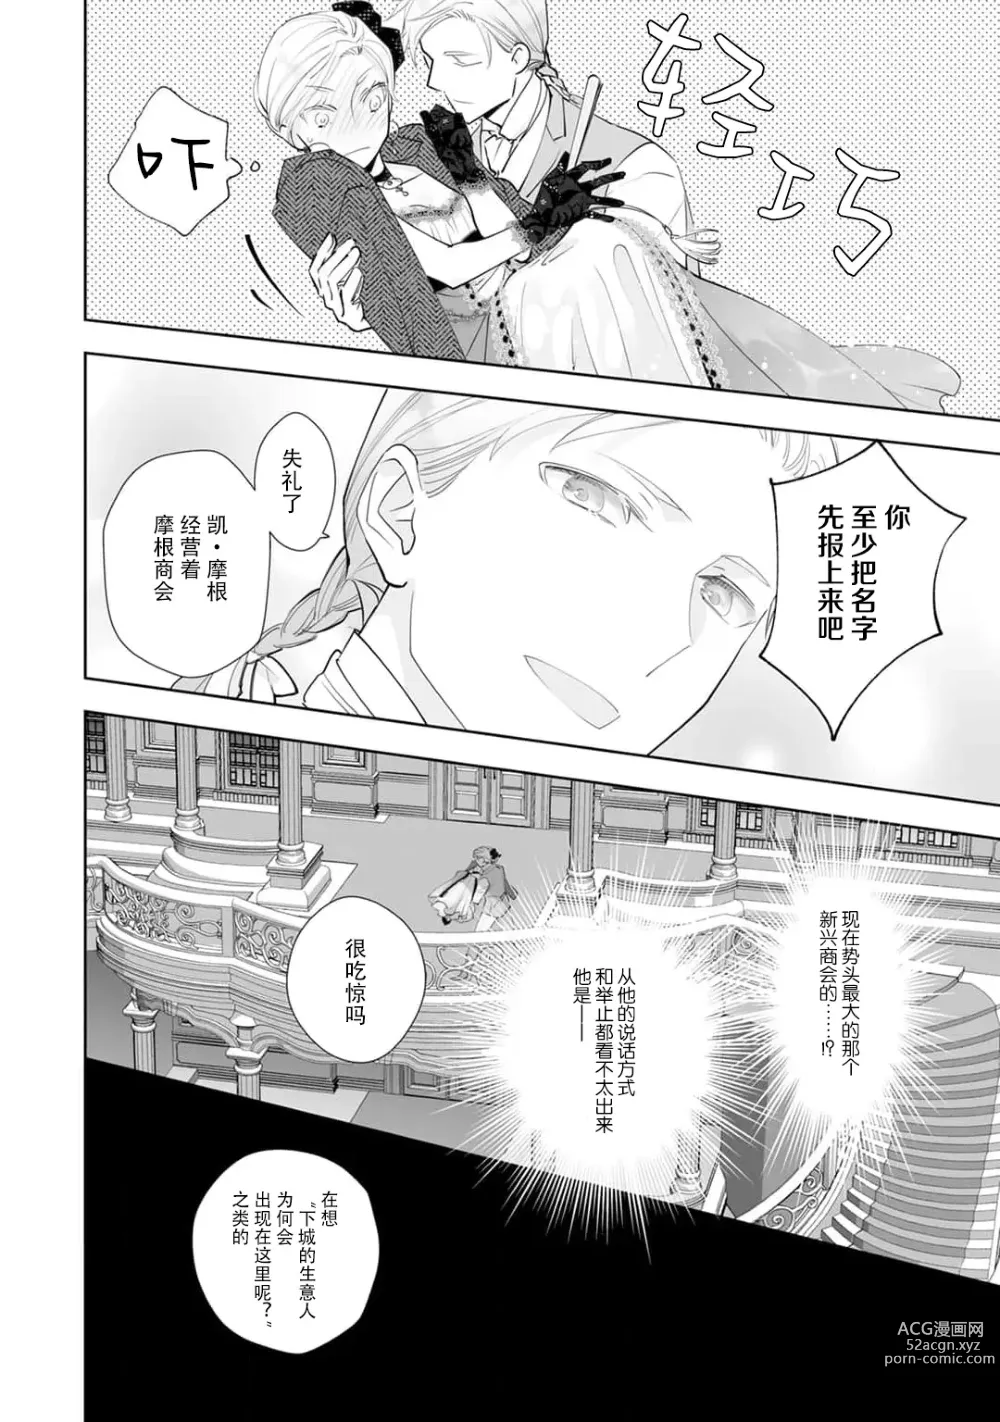 Page 12 of manga 被解除婚约的恶役千金，被帅哥资产家求婚了。 1-4